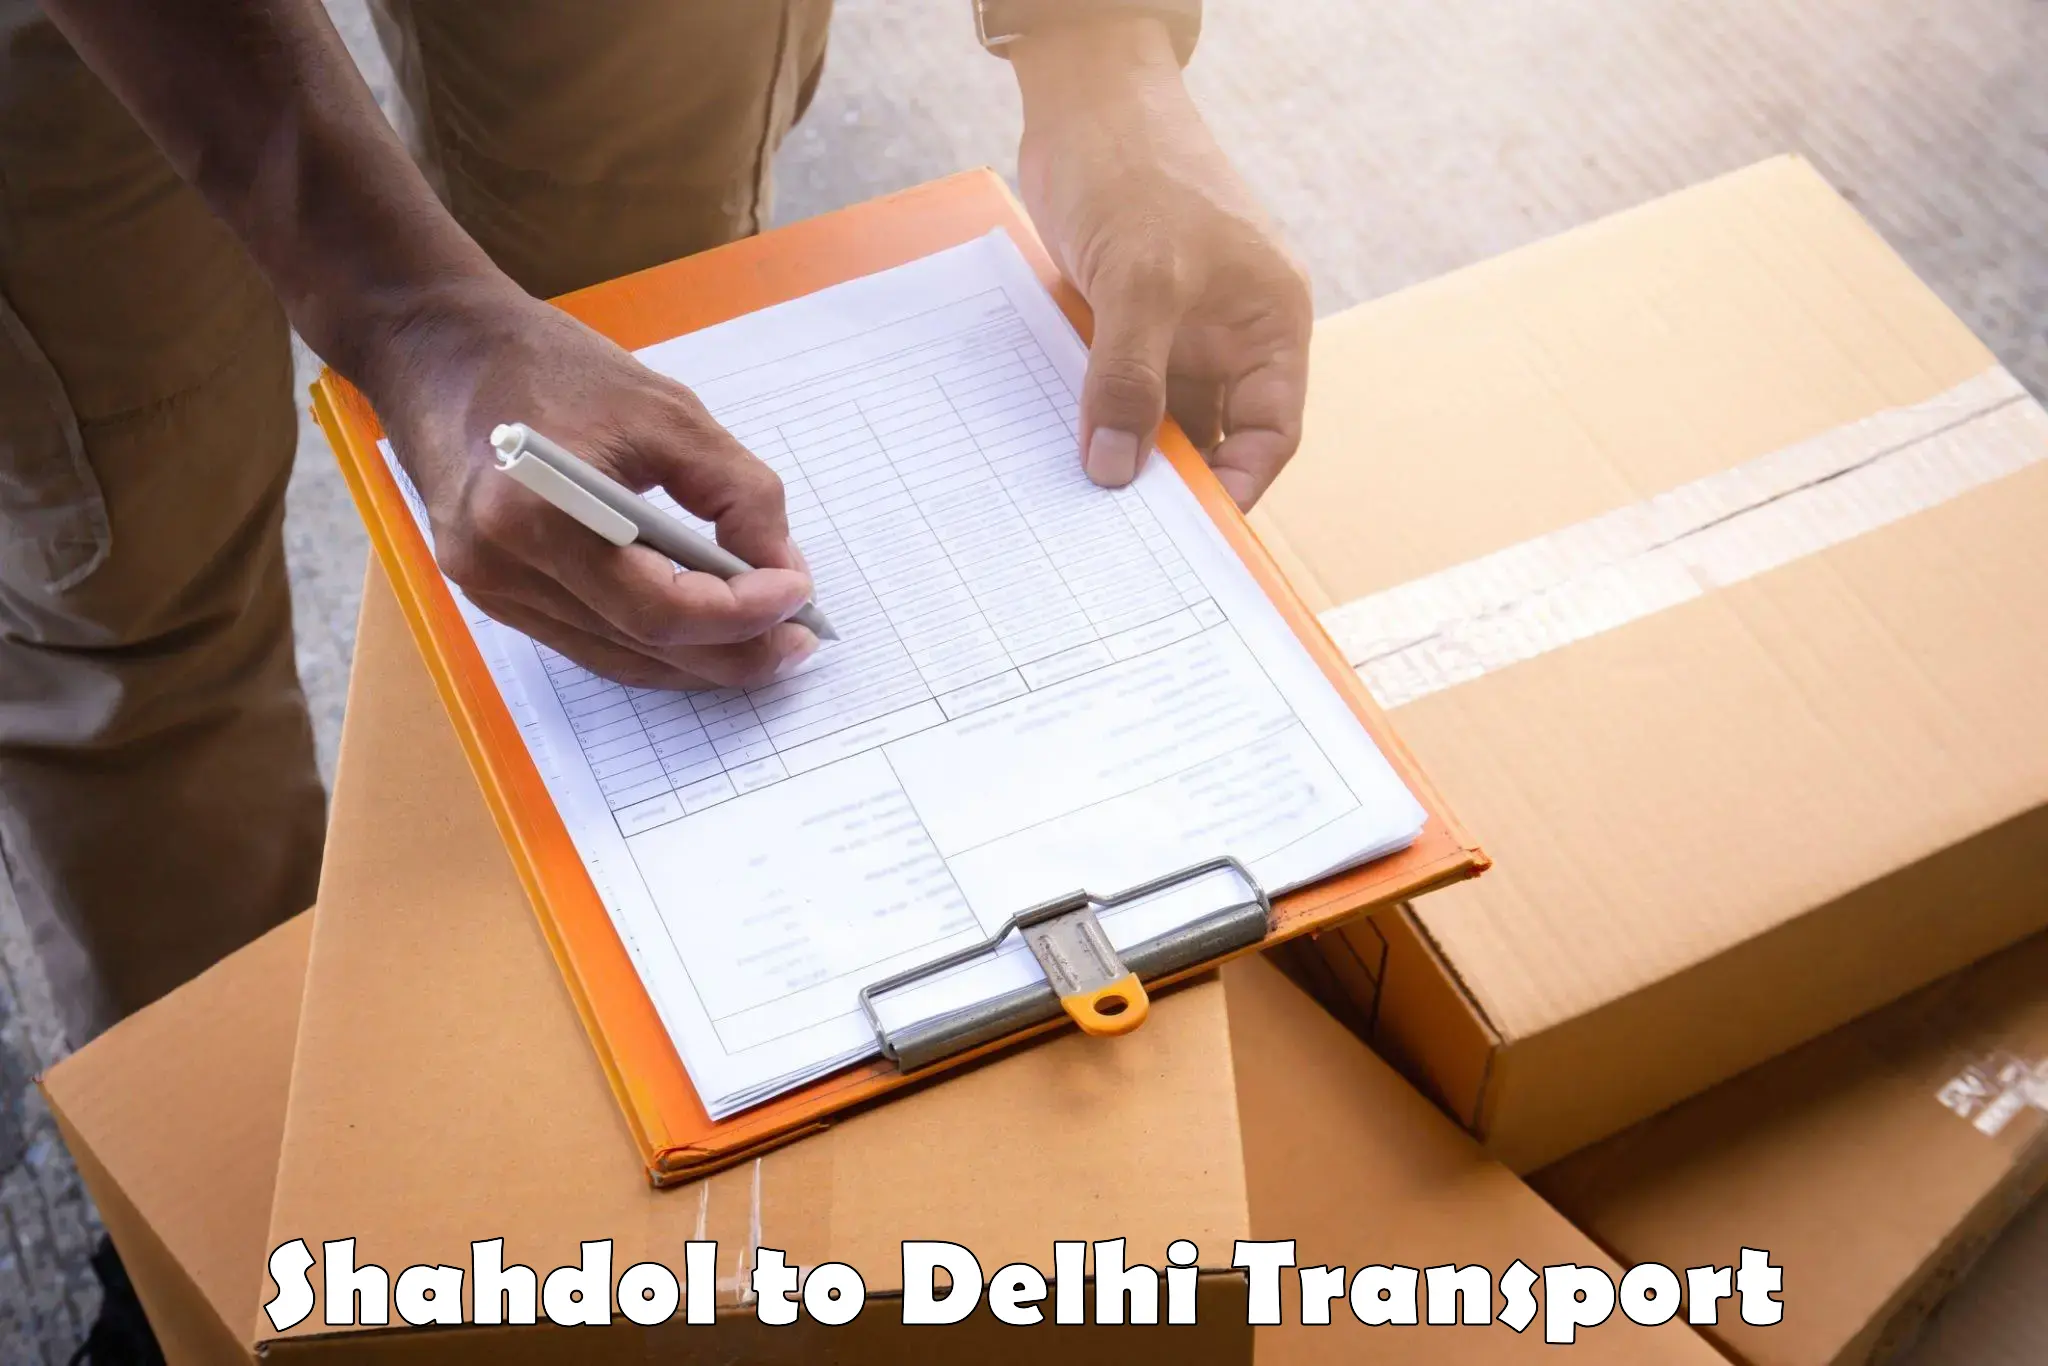 Online transport service Shahdol to Delhi